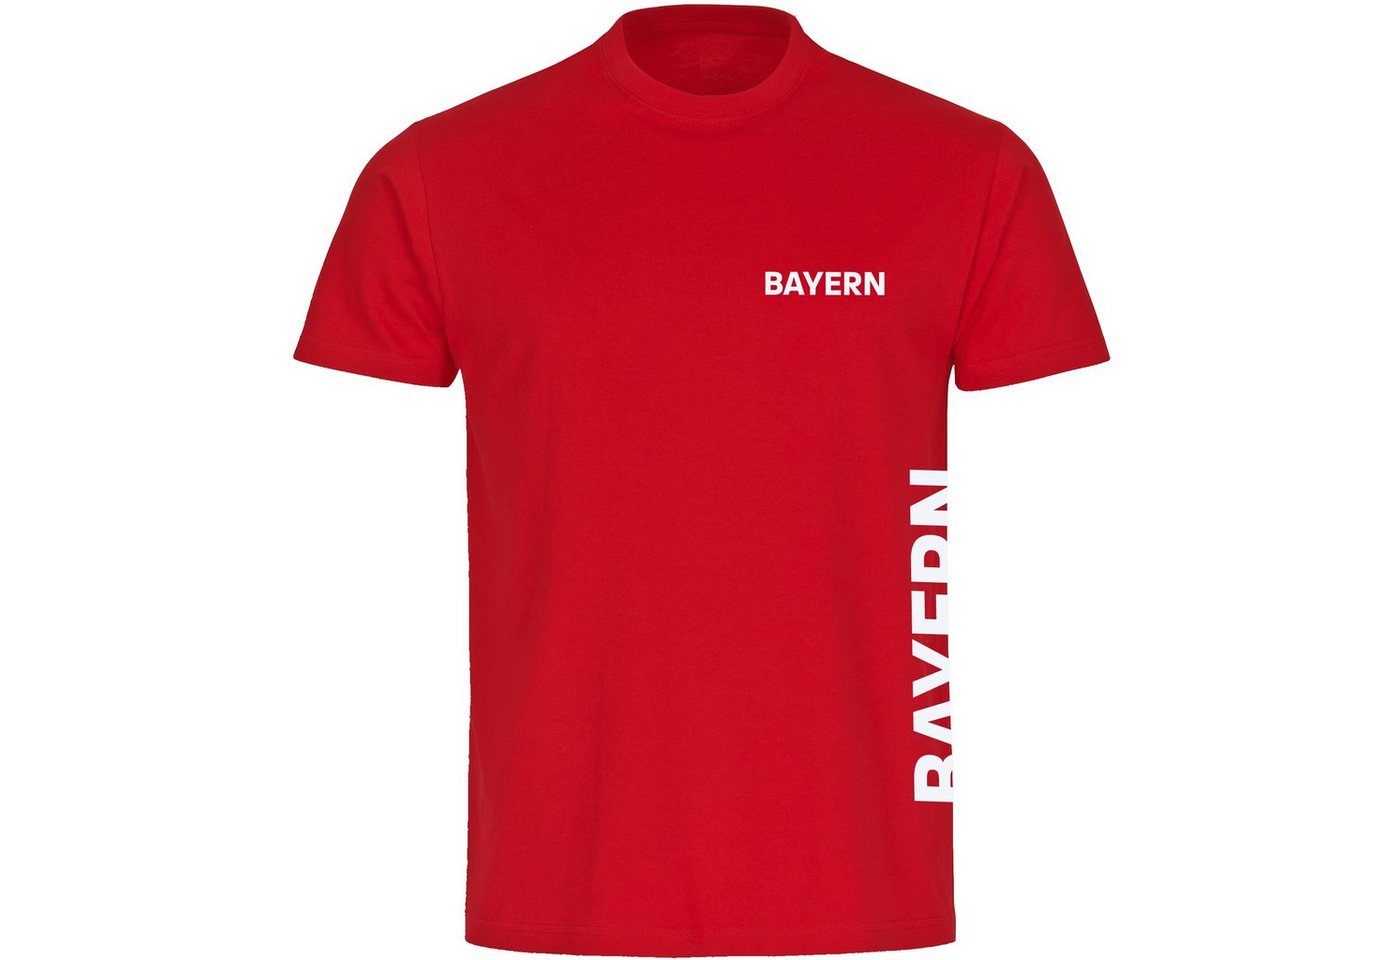 multifanshop T-Shirt Herren Bayern - Brust & Seite - Männer von multifanshop